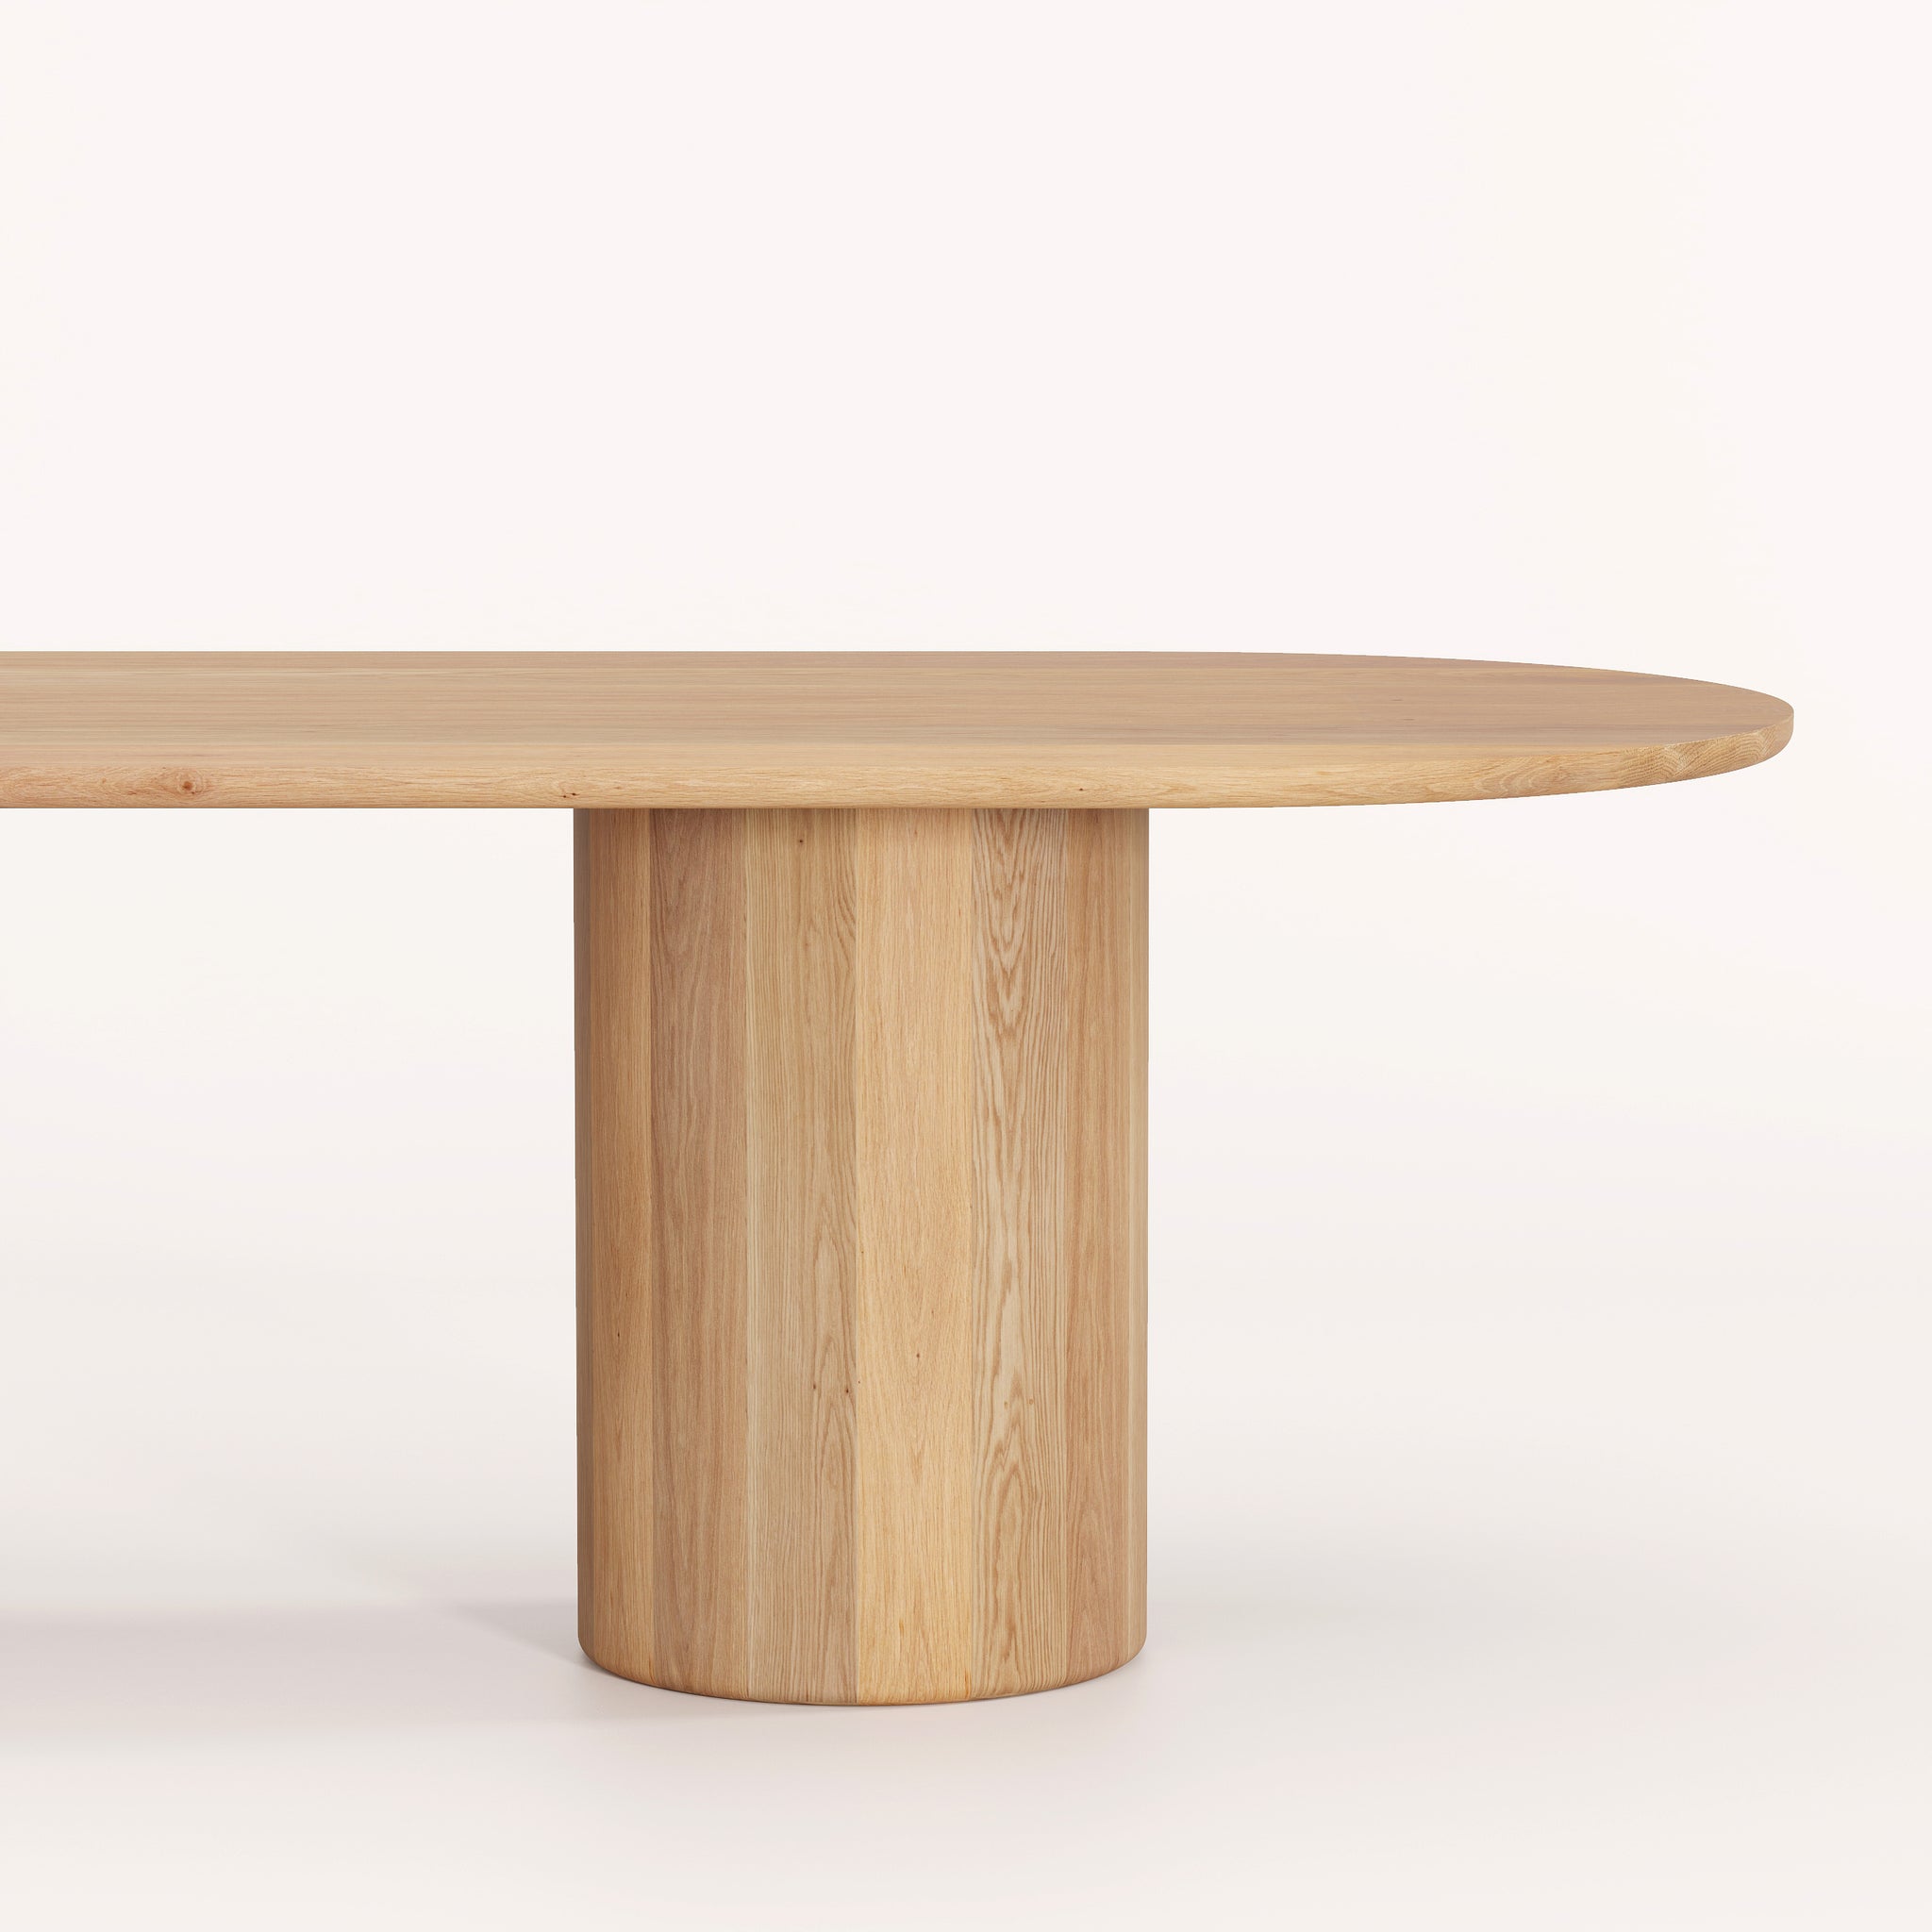 Border table. High end designer furniture.